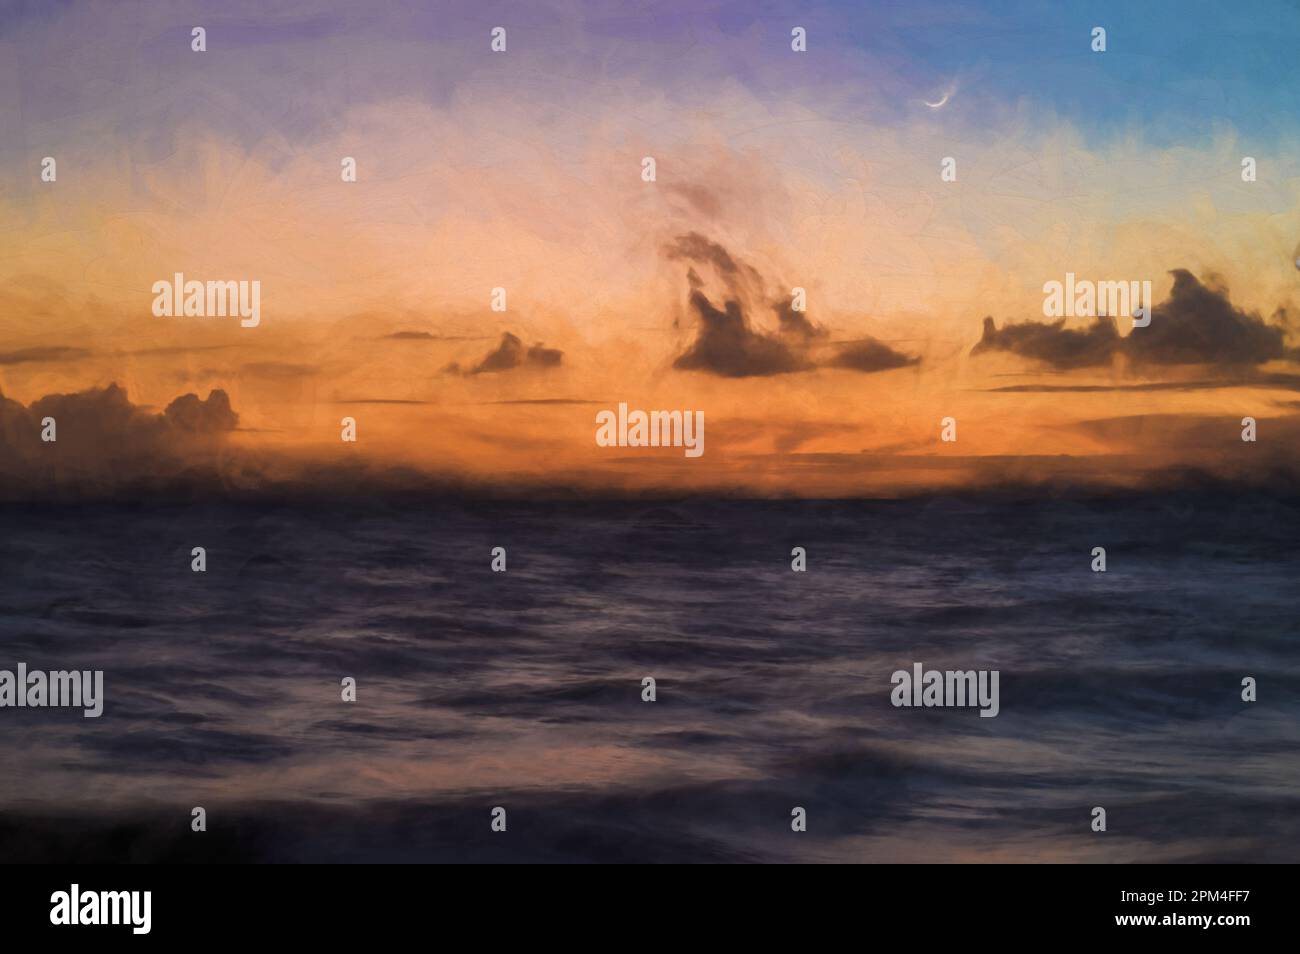 Pittura digitale di una lunga esposizione del mare all'ora d'oro, mentre l'alba comincia a rompersi su una spiaggia di sabbia bianca. Foto Stock